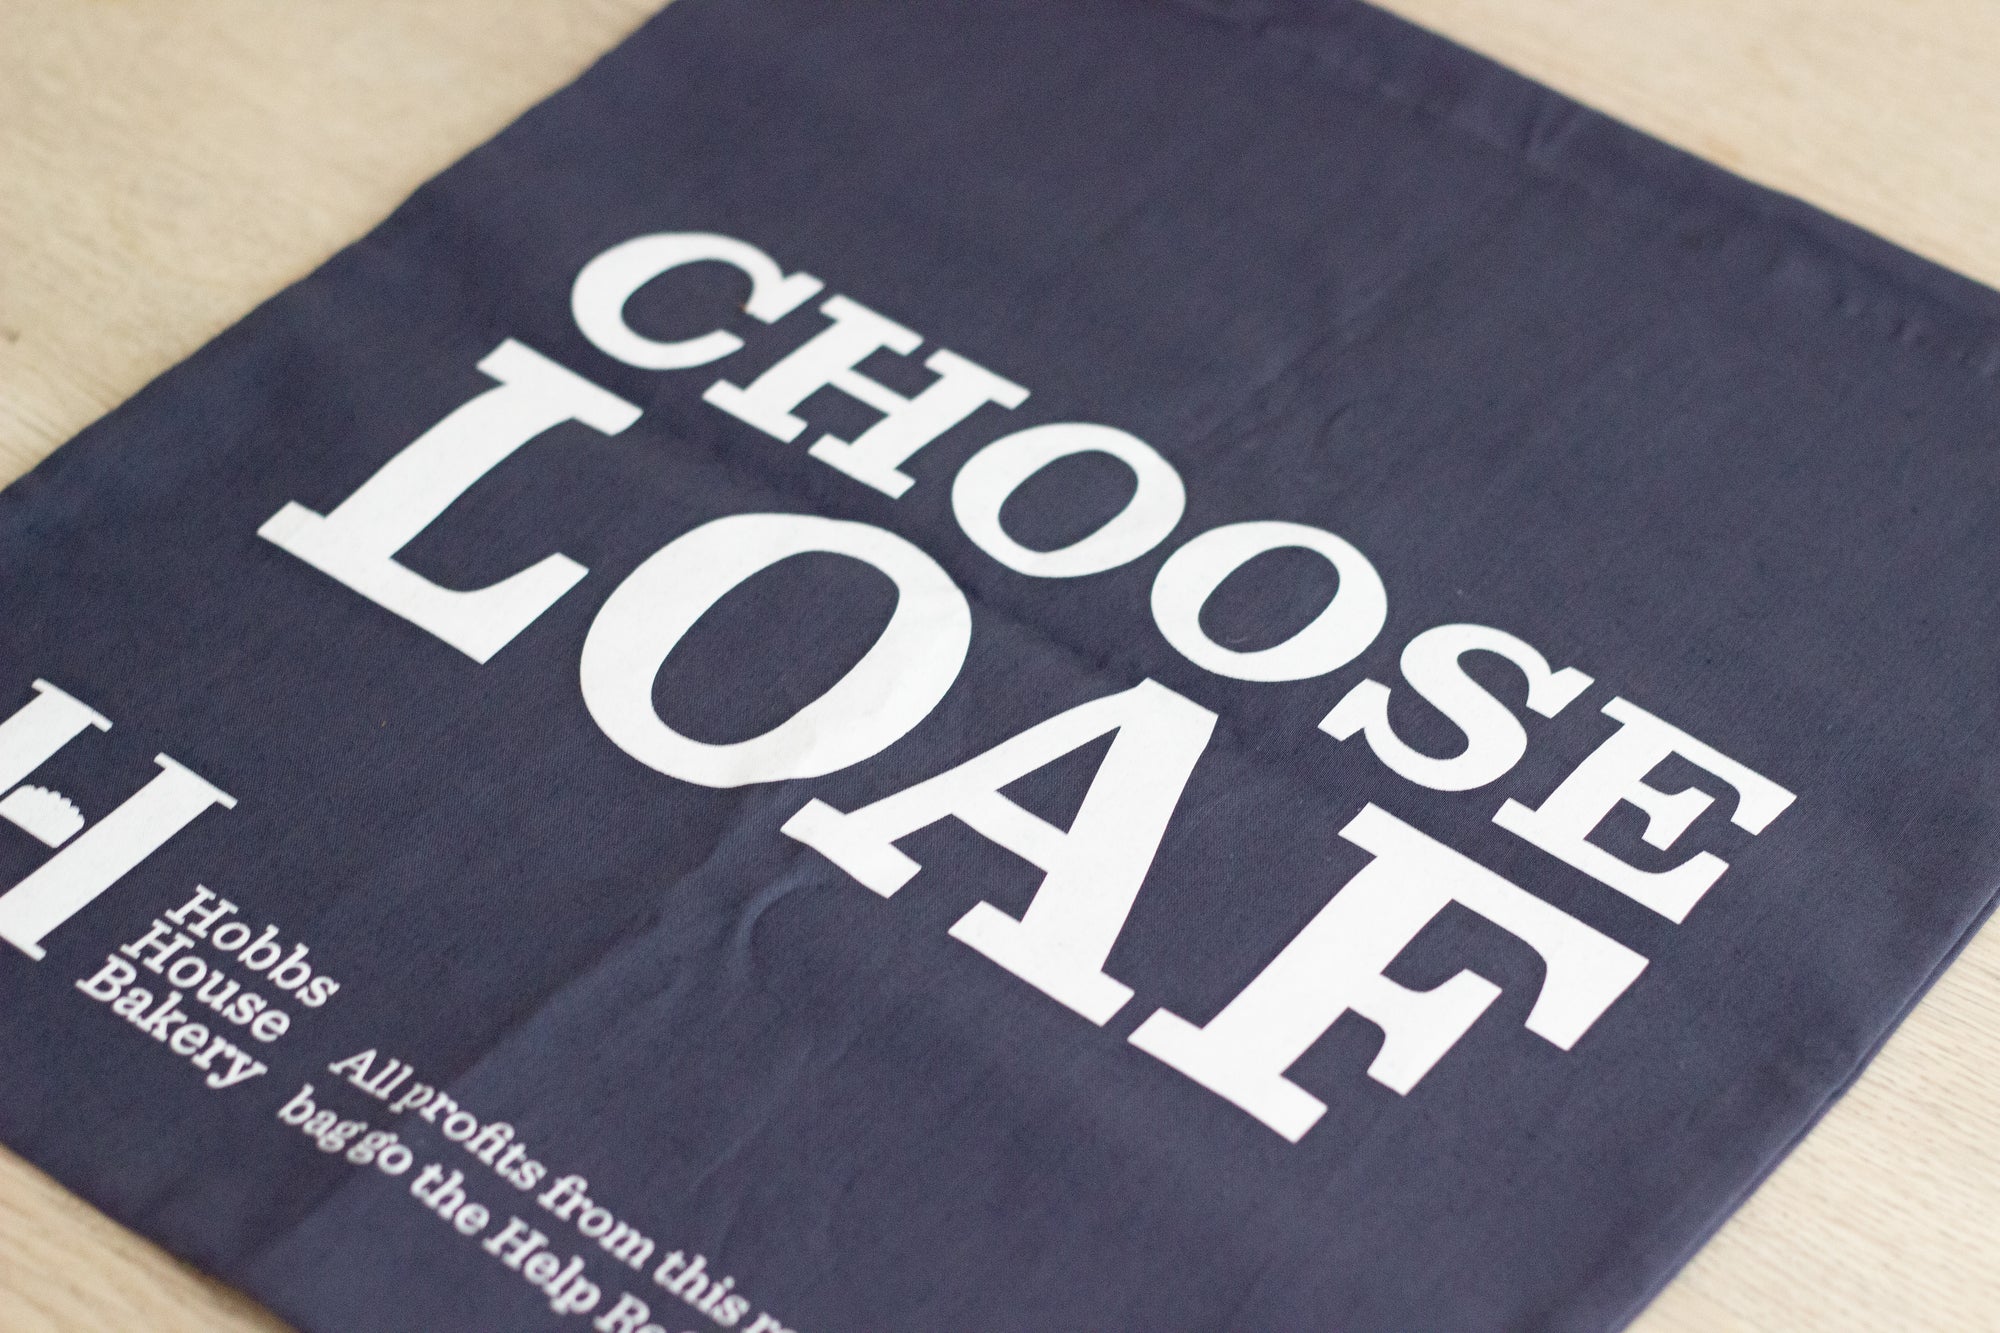 'Choose Loaf' Cotton Bread Bag